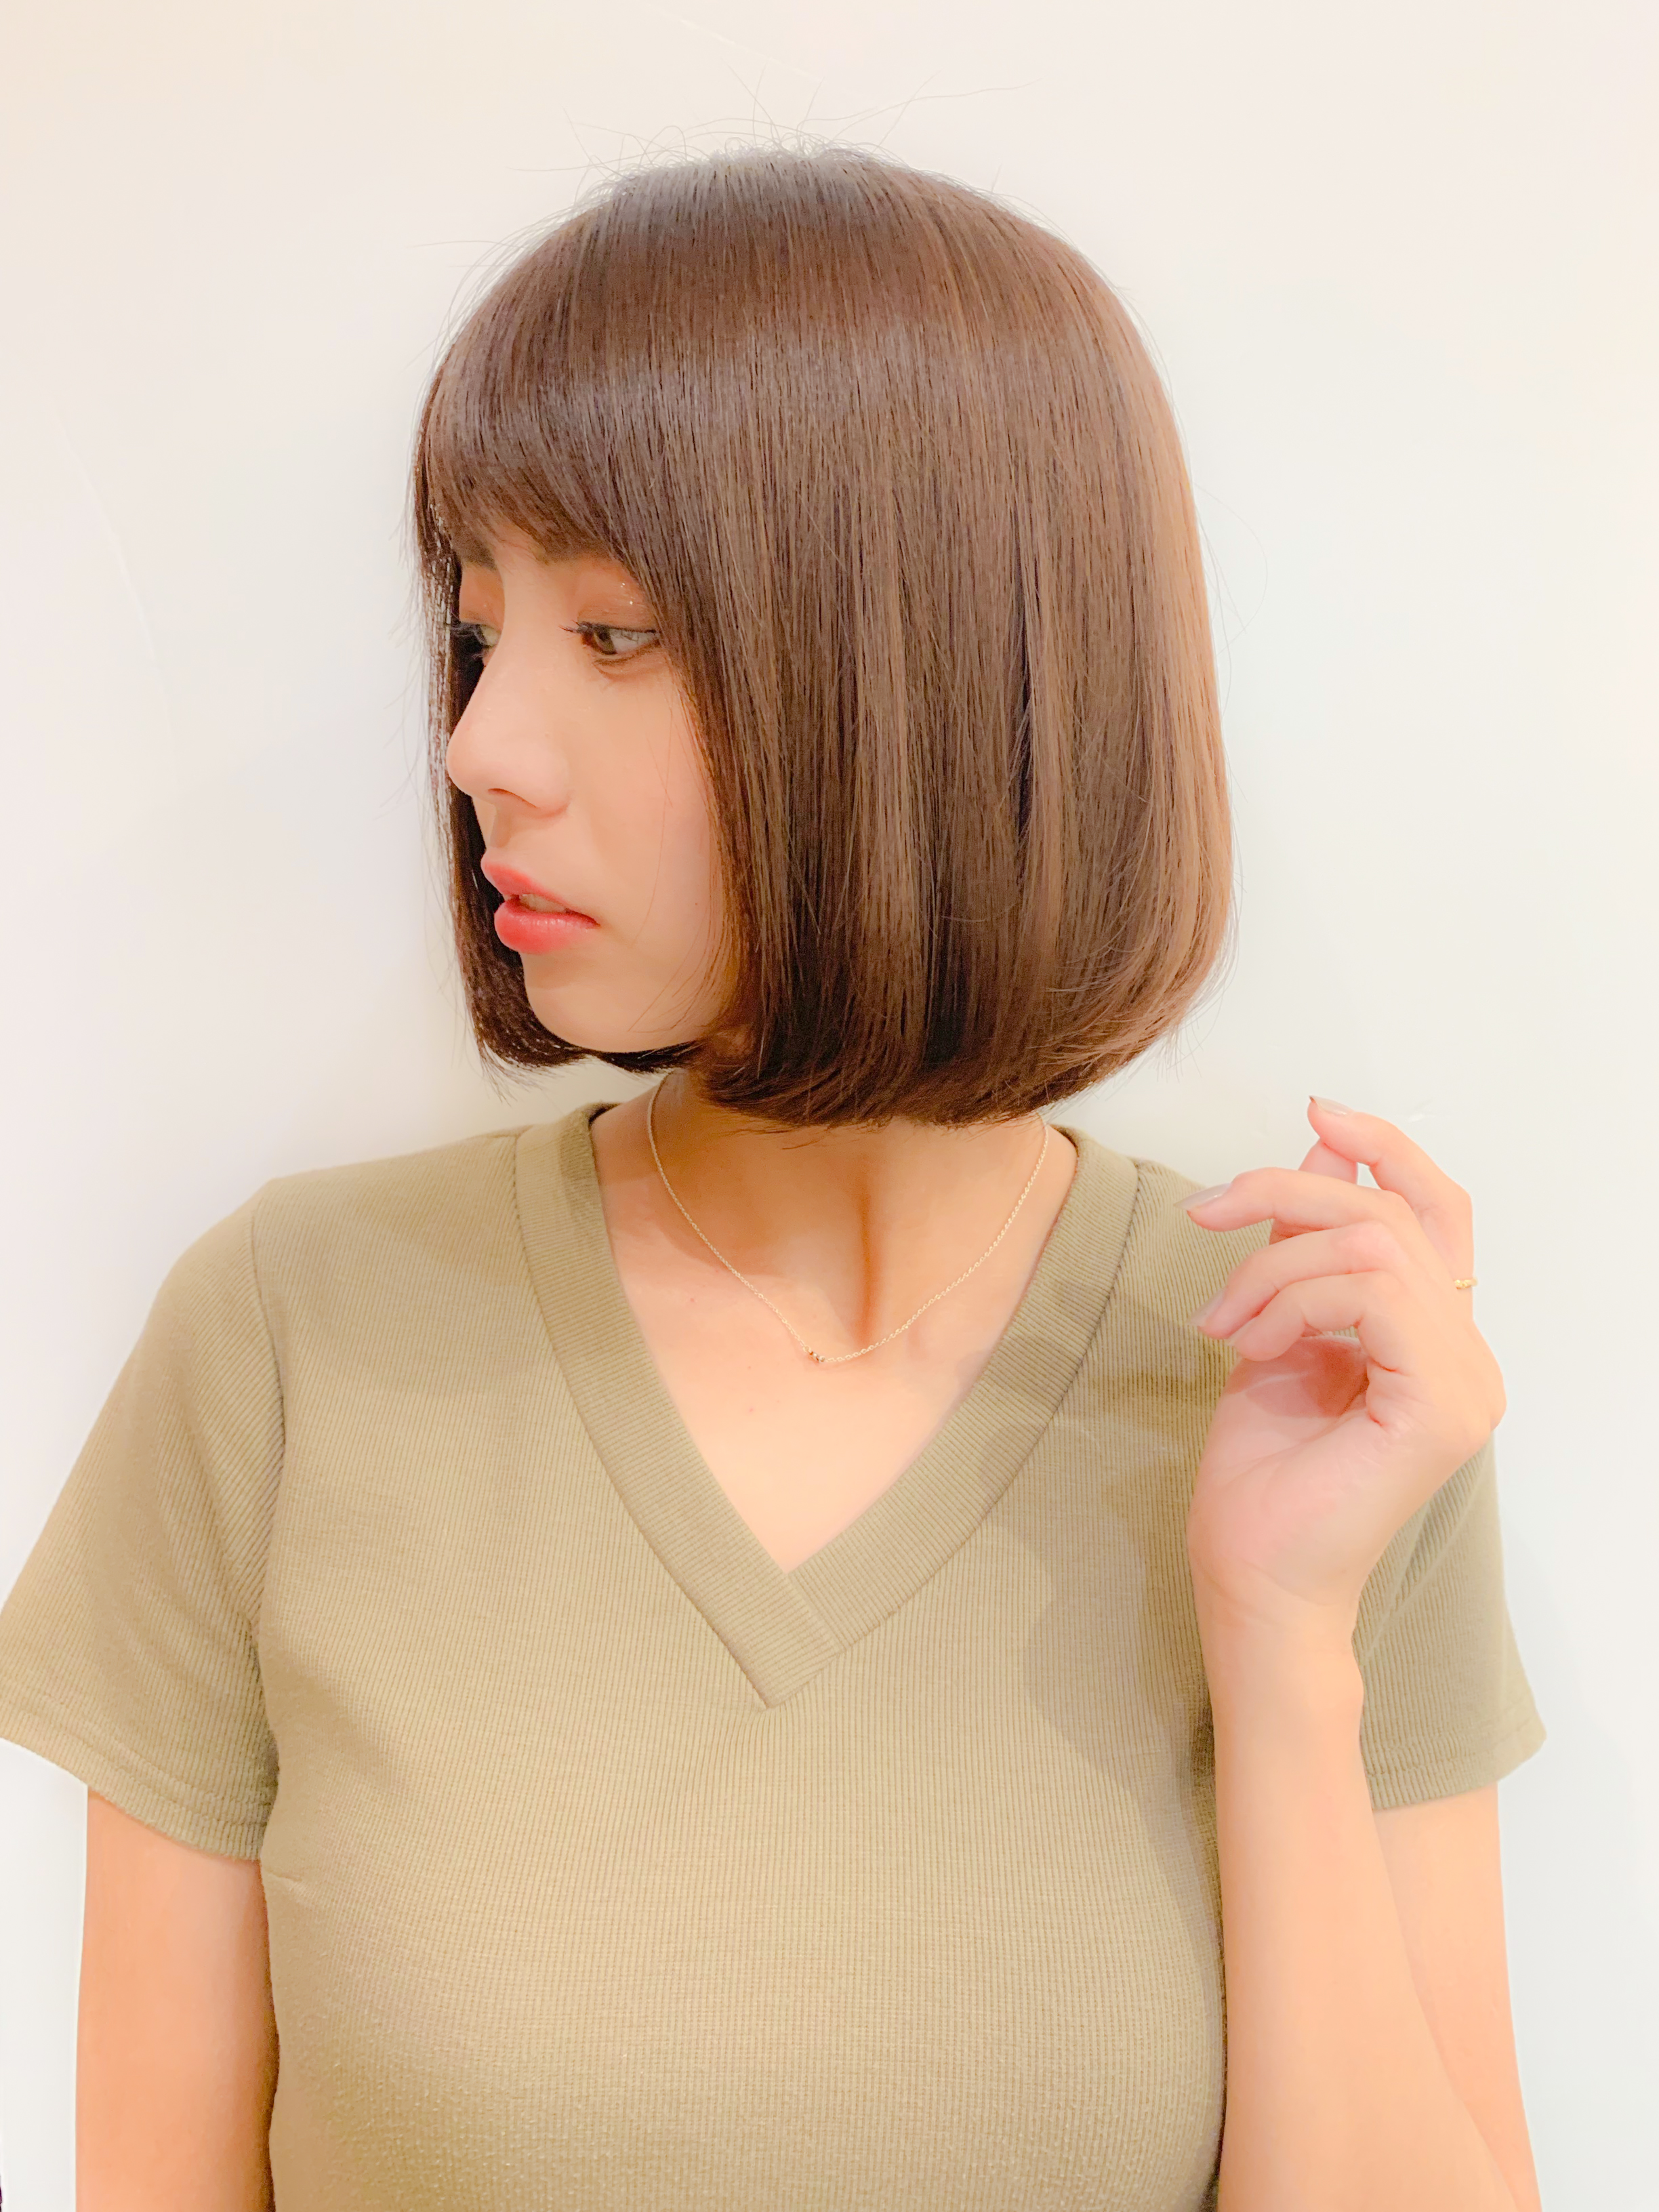 22年夏 ギリギリ結べる長さのボブで人気の髪型選 似合わせカットが上手い東京の美容師 美容室minx銀座 蛭田のブログ